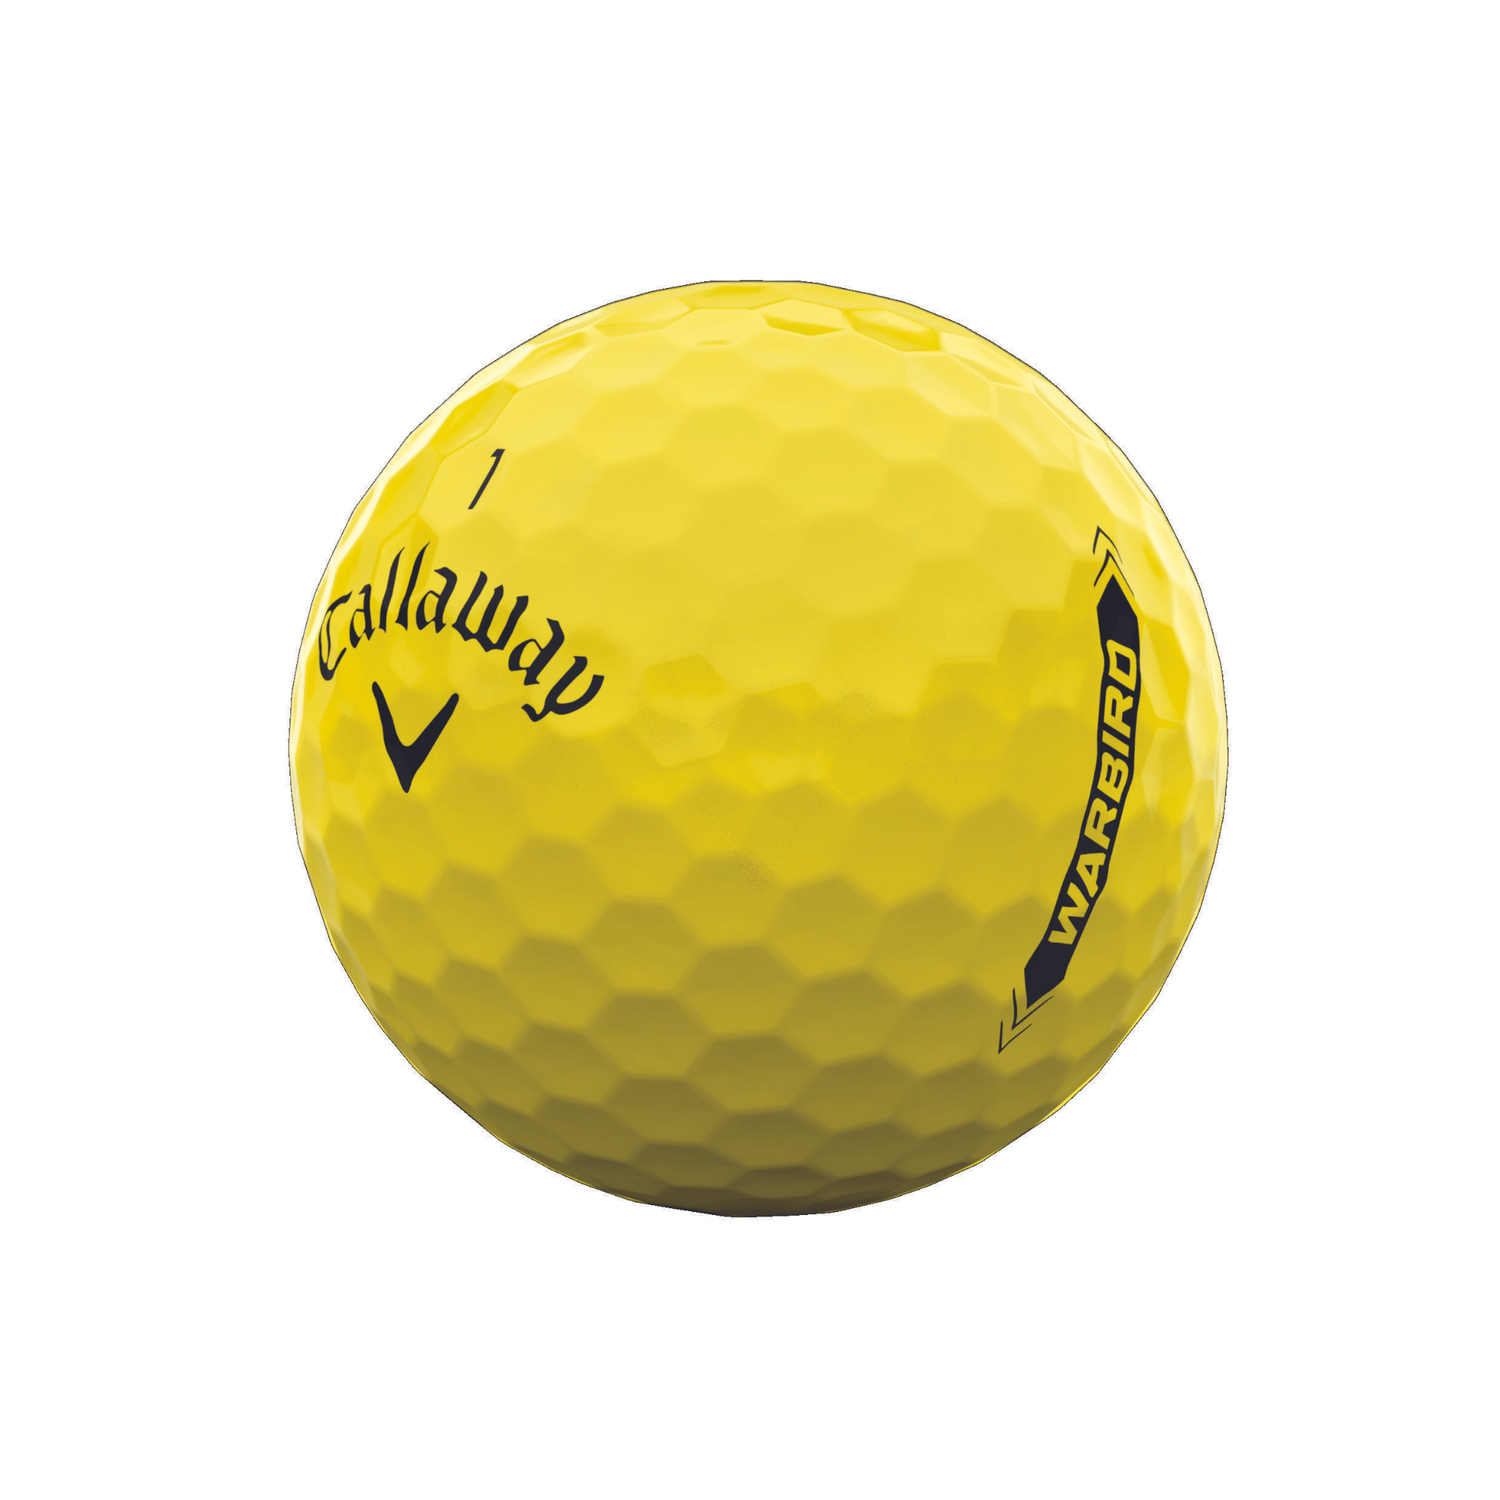 Callaway Golf Warbird Golf Balls   